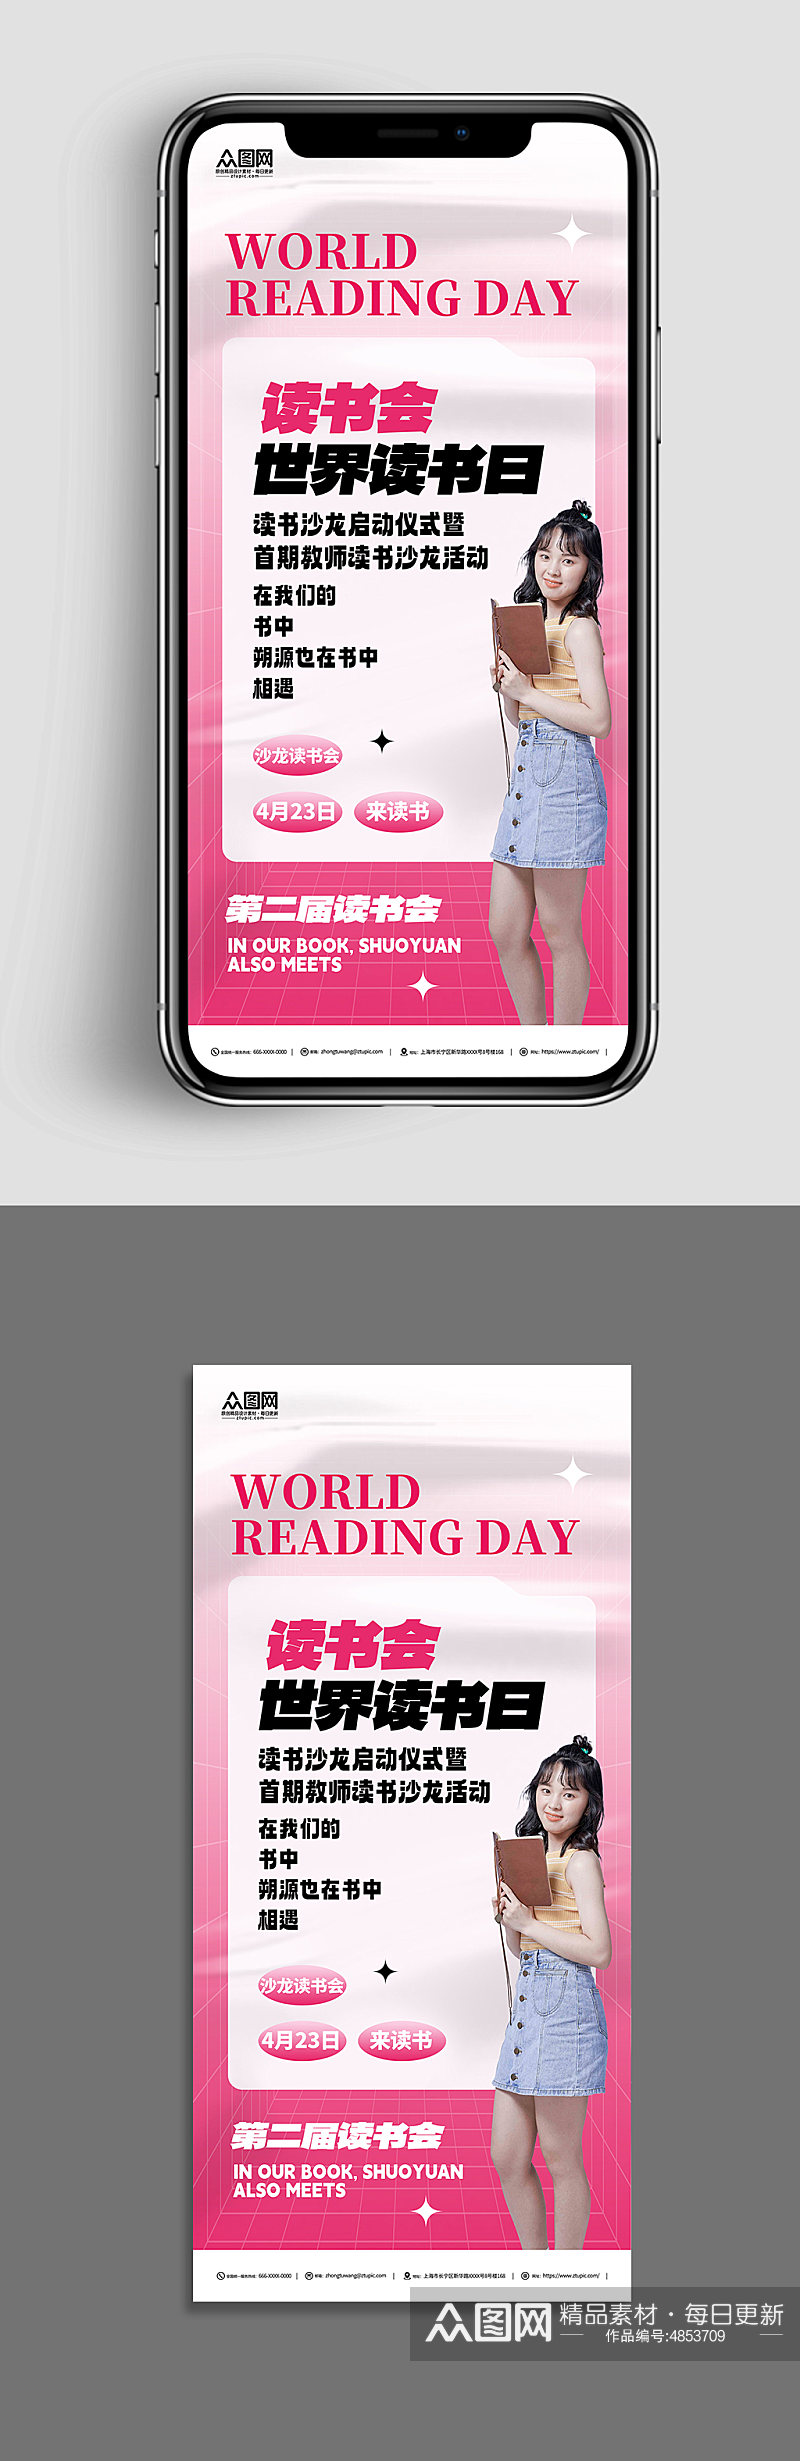 粉色4月23日世界读书日书店促销活动海报素材